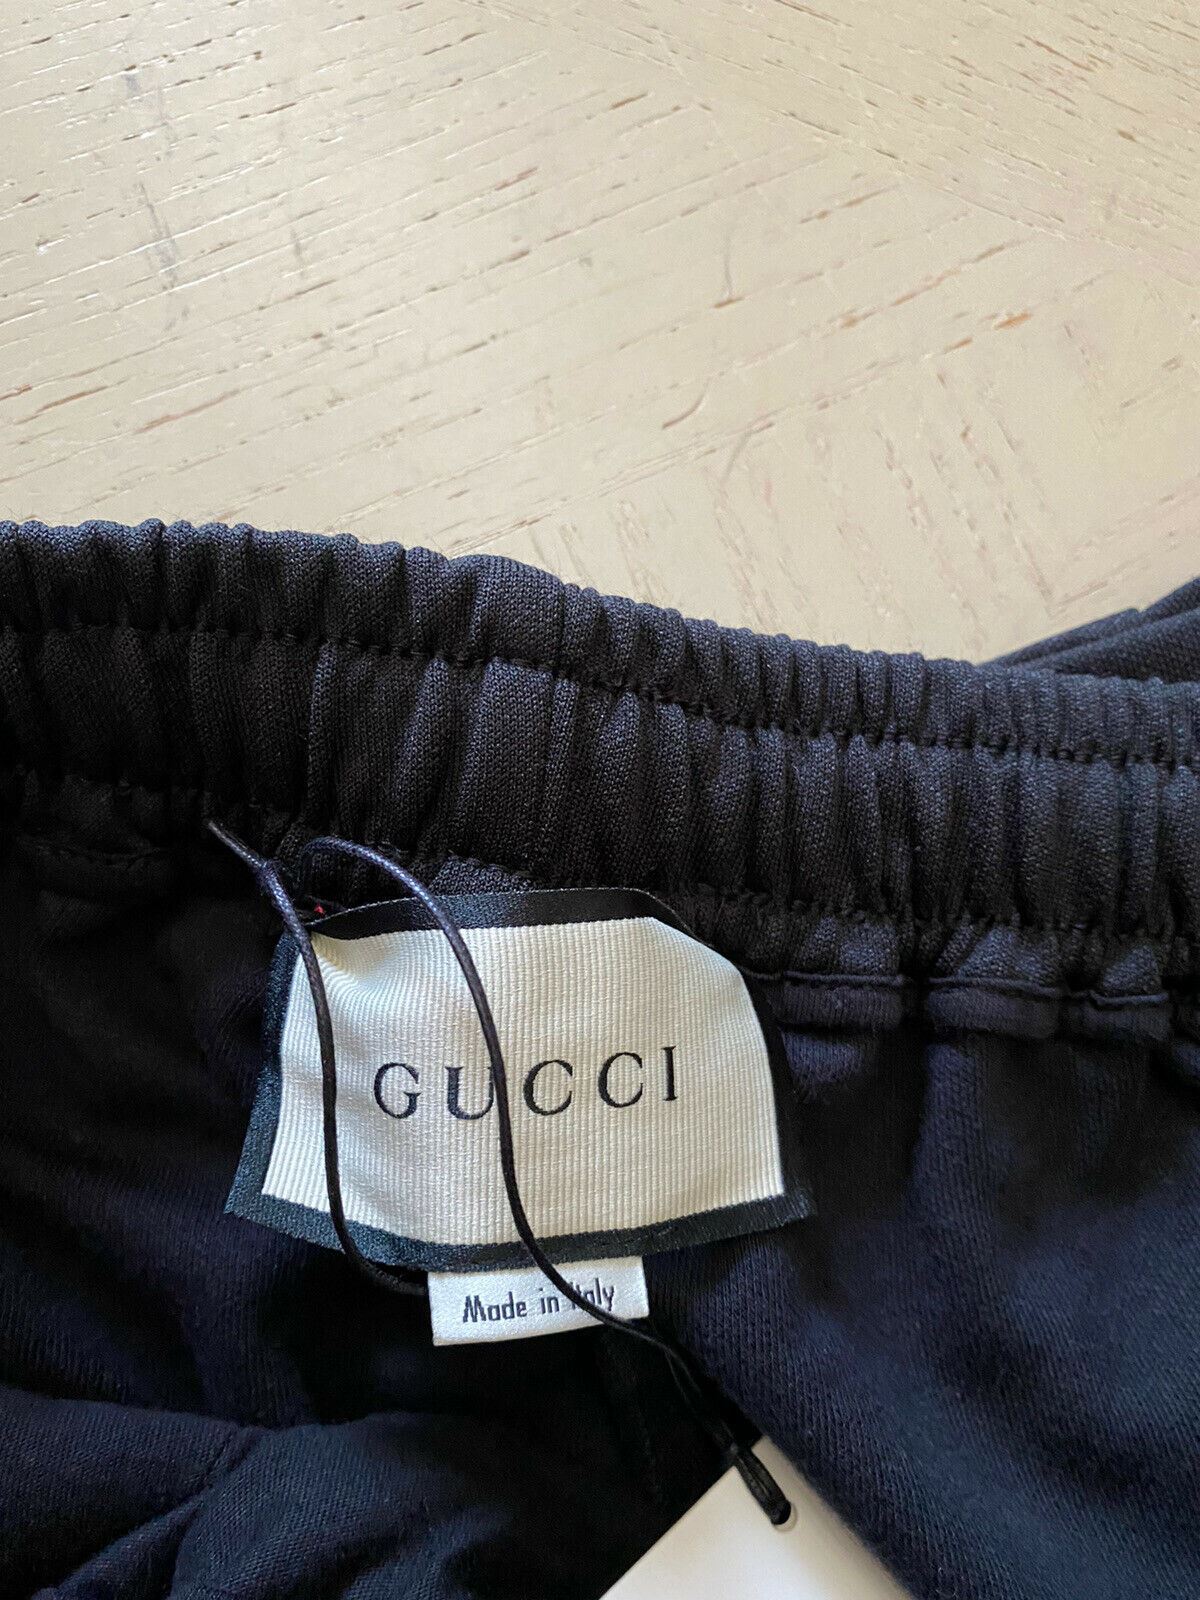 Мужские шорты NWT Gucci черные/зеленые/красные, размер L, Италия